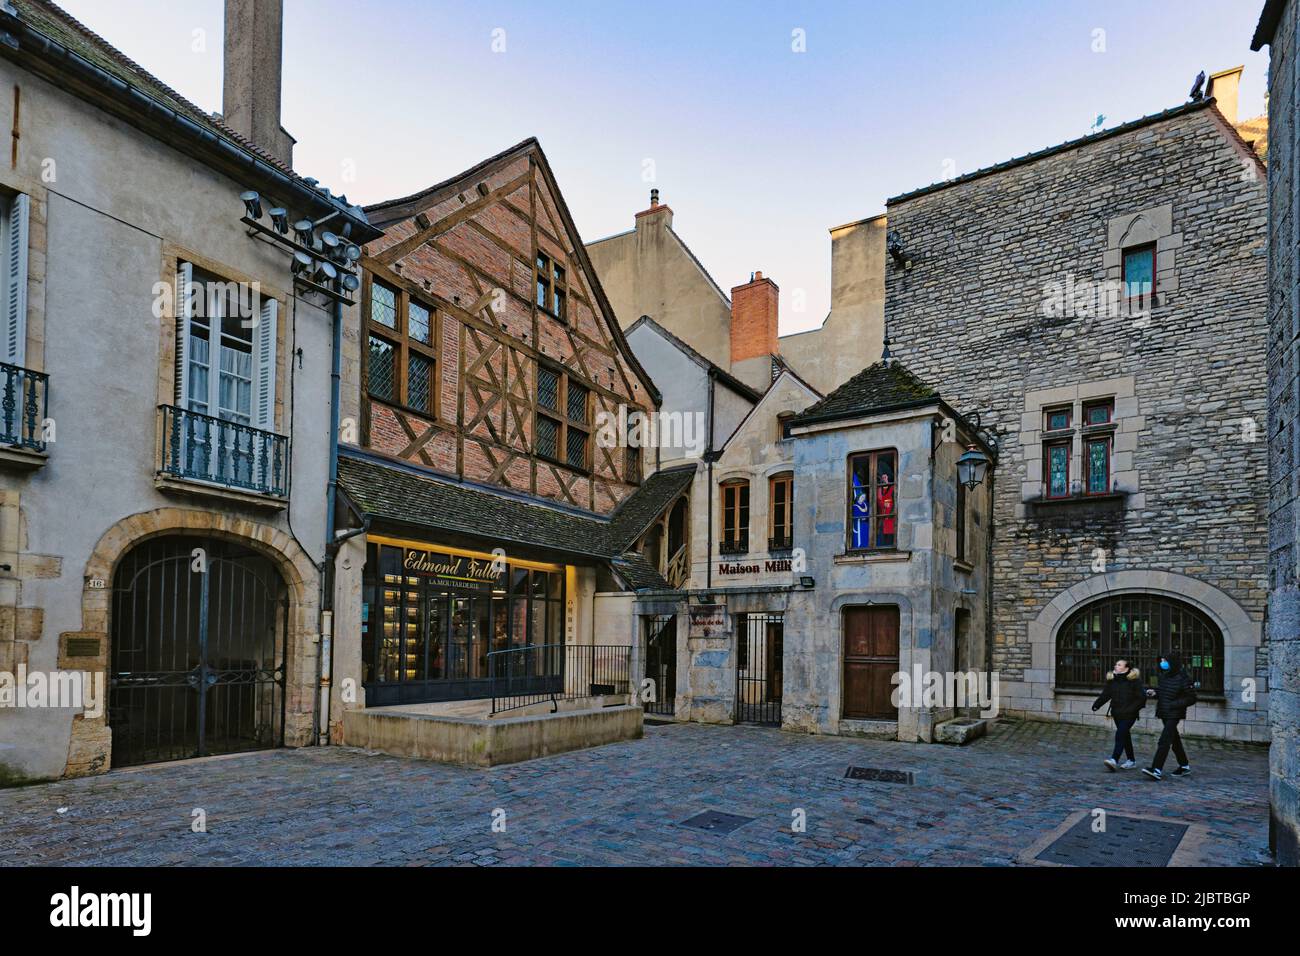 Francia, Cote d'Or, Digione, zona classée Patrimoine Mondial de l'Unesco, la Moutarderie Edmond Fallot située rue de la Chouette Foto Stock